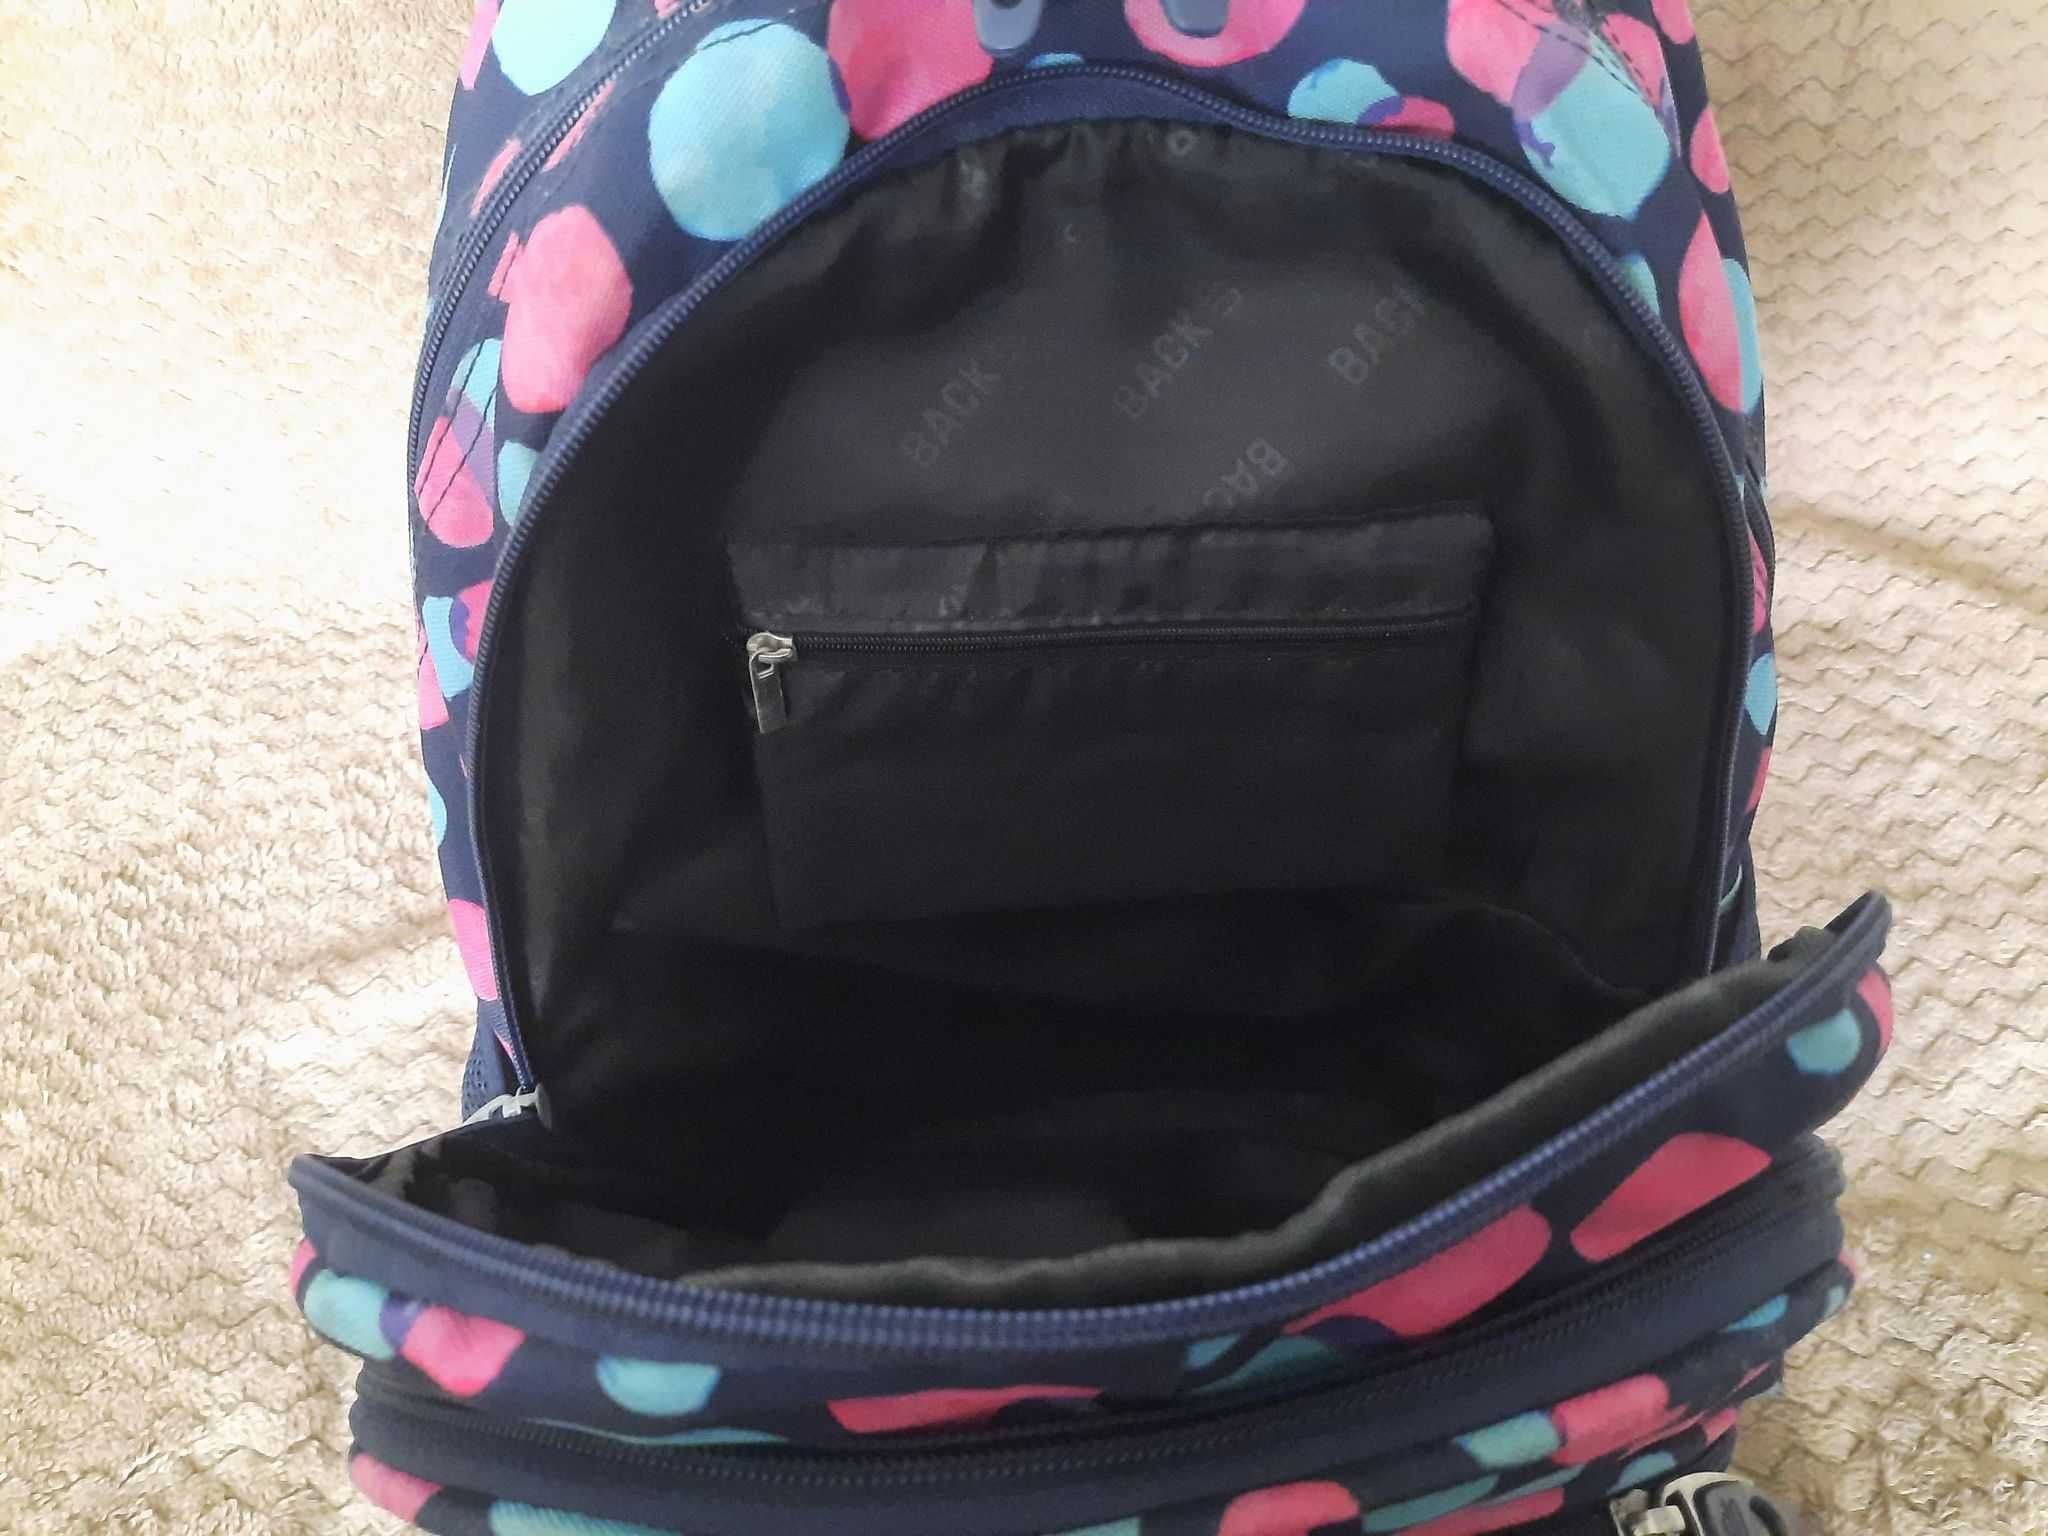 Plecak szkolny BackUp model B 1 w kółka